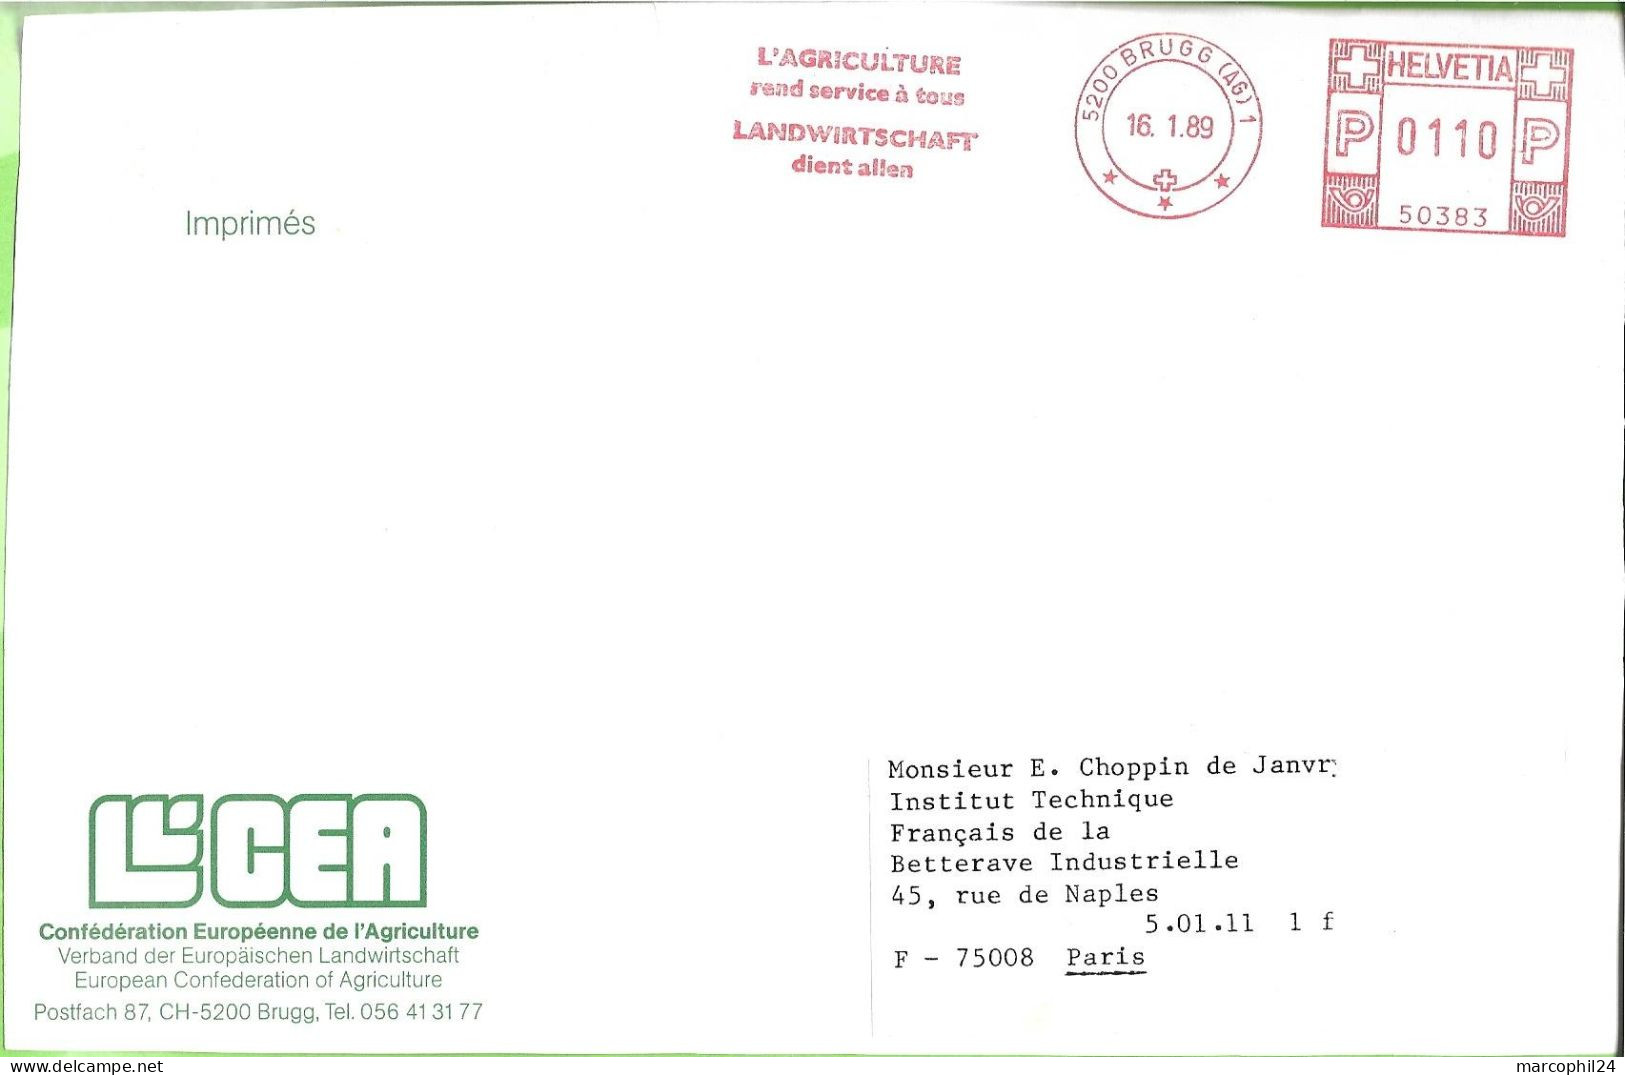 BRUGG 1989 =FLAMME ROUGE EMA 'L' AGRICULTURE Rend Service à Tous' - HELVETIA - Confédération Européenne De L'Agriculture - Postage Meters